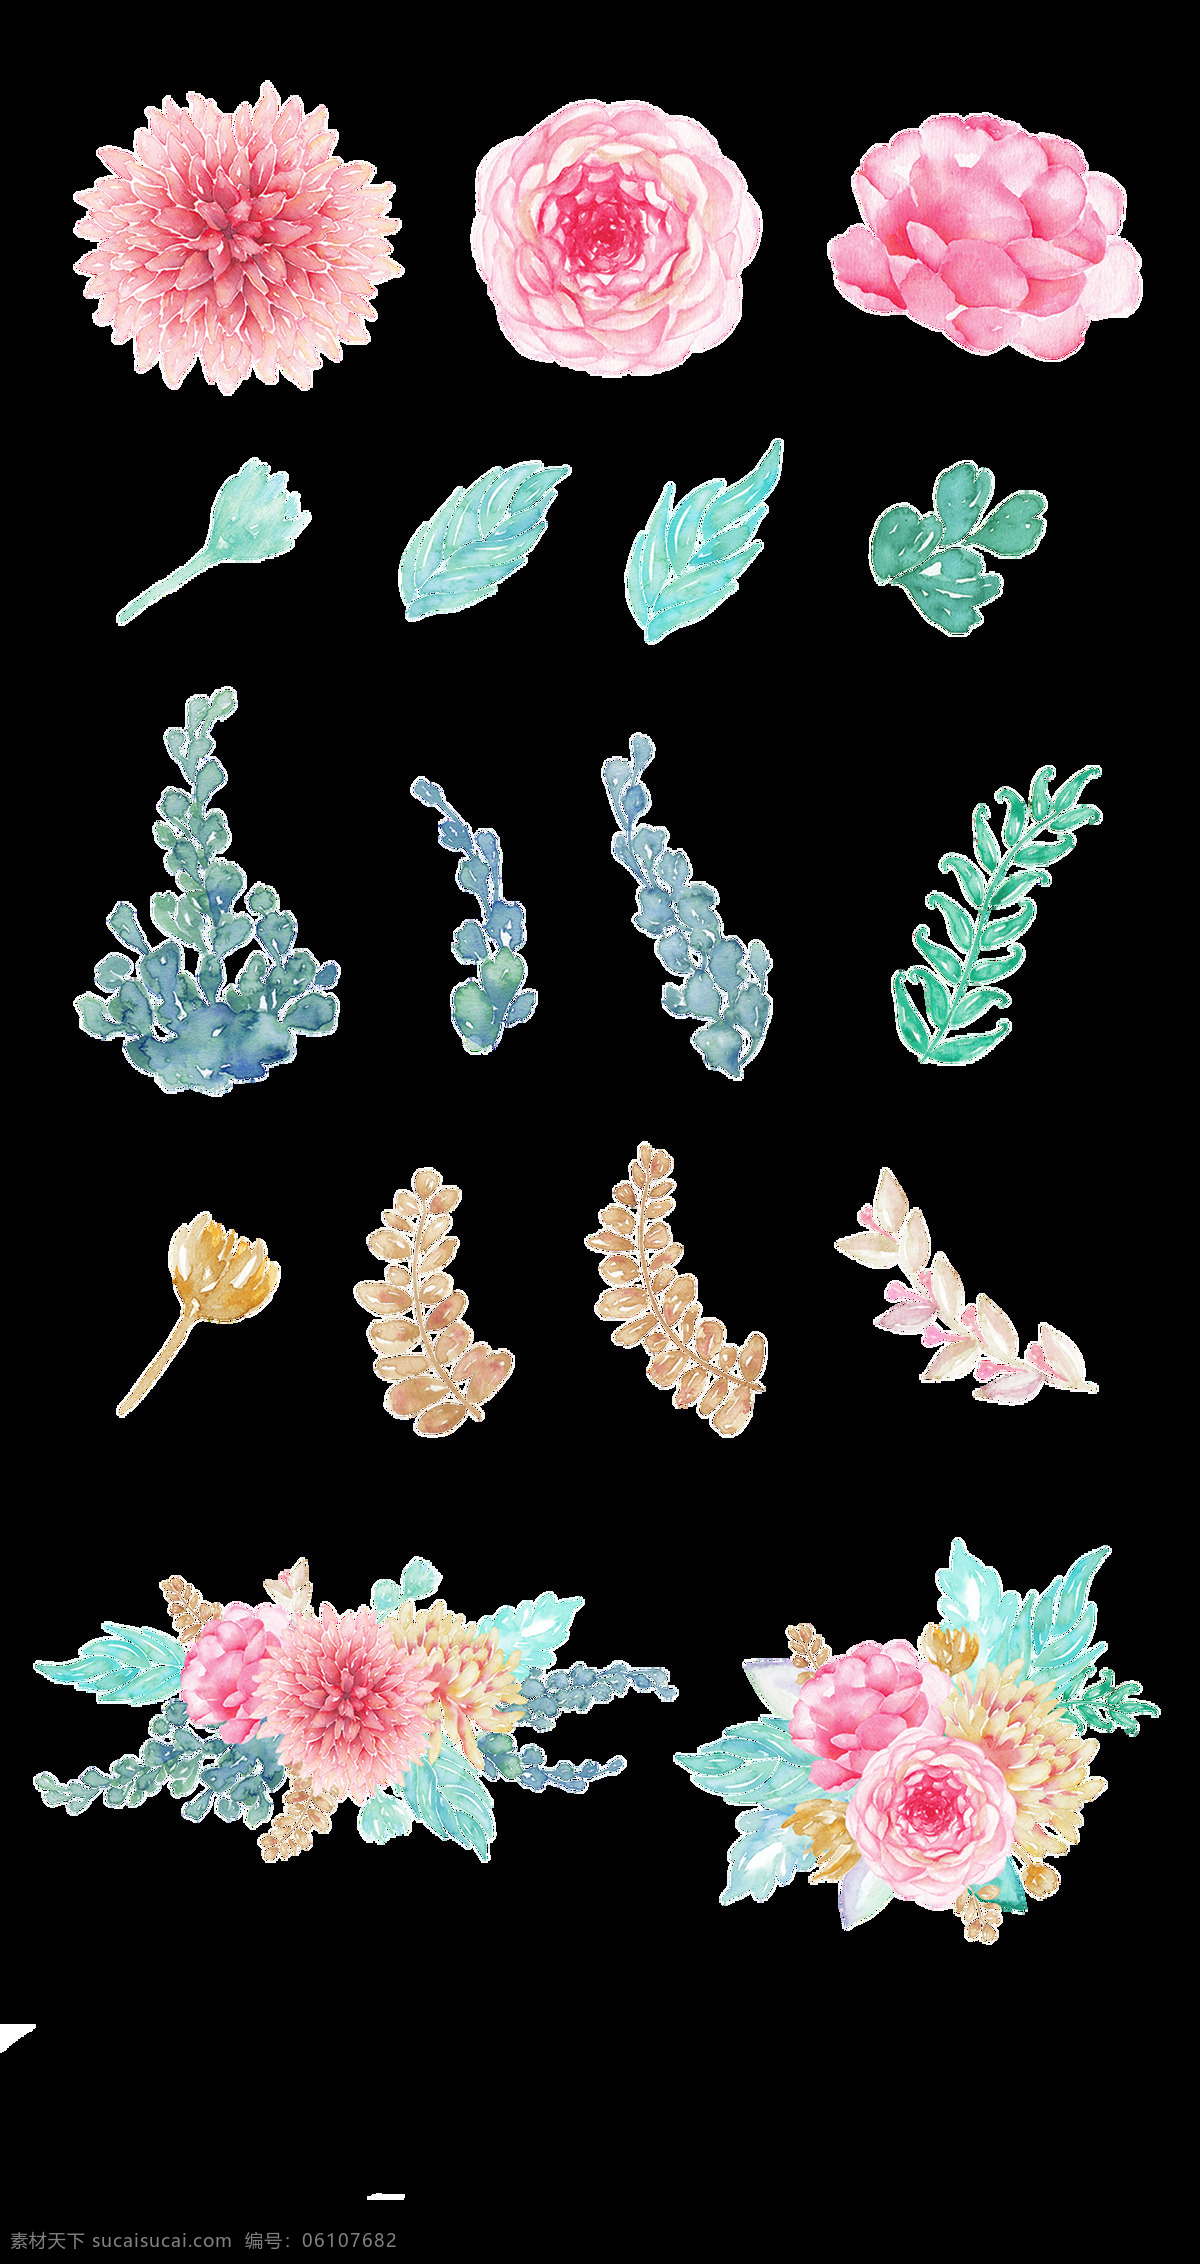 创意 花卉 手绘 设计图 透明 装饰 免 扣 逼真 橙色 粉色 蓝绿 绿叶 鲜花